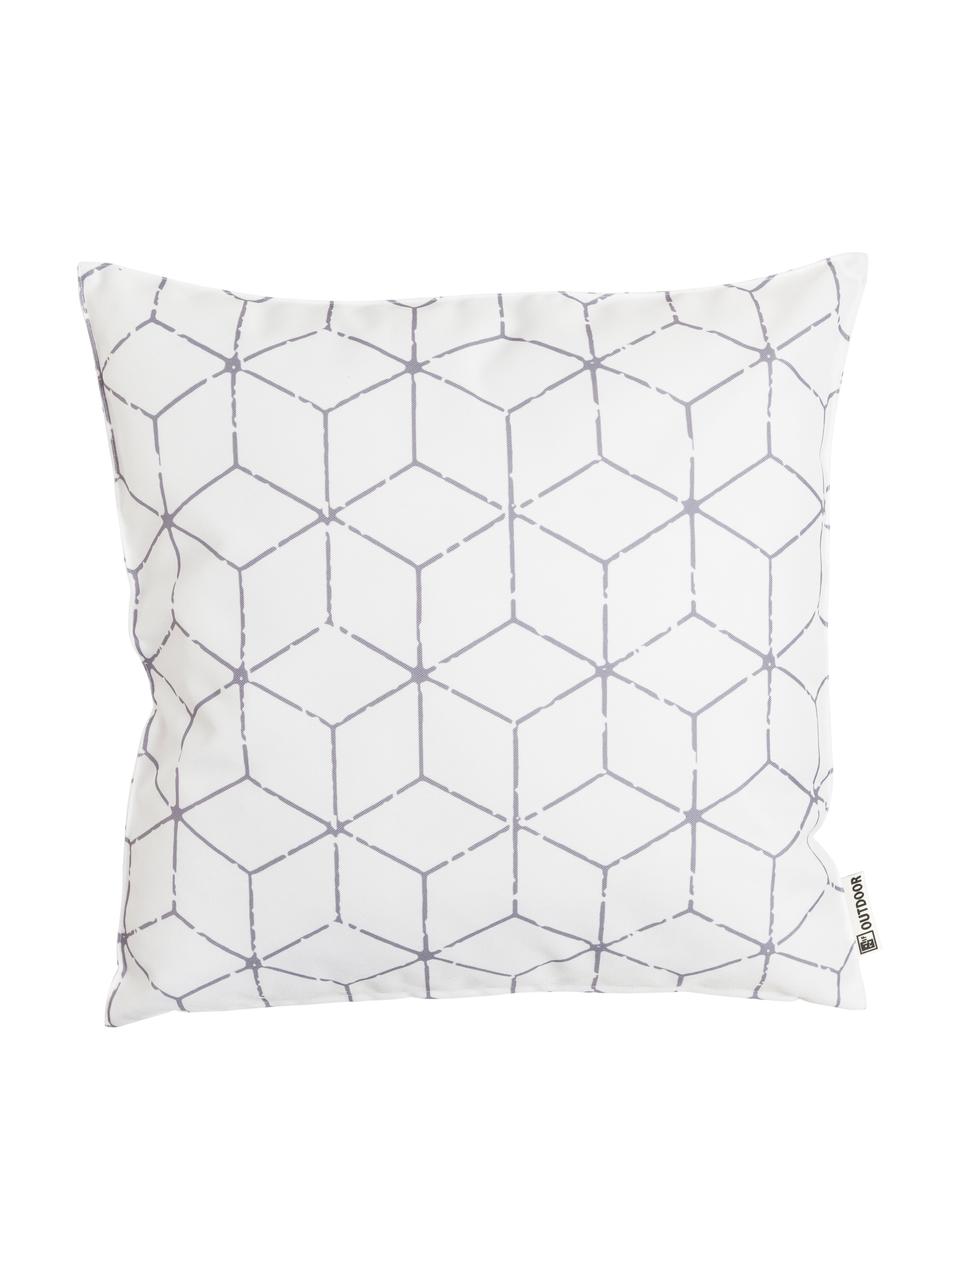 Outdoor-Kissen Cube mit grafischem Muster in Grau/Weiss, mit Inlett, 100% Polyester, Weiss, Grau, 47 x 47 cm